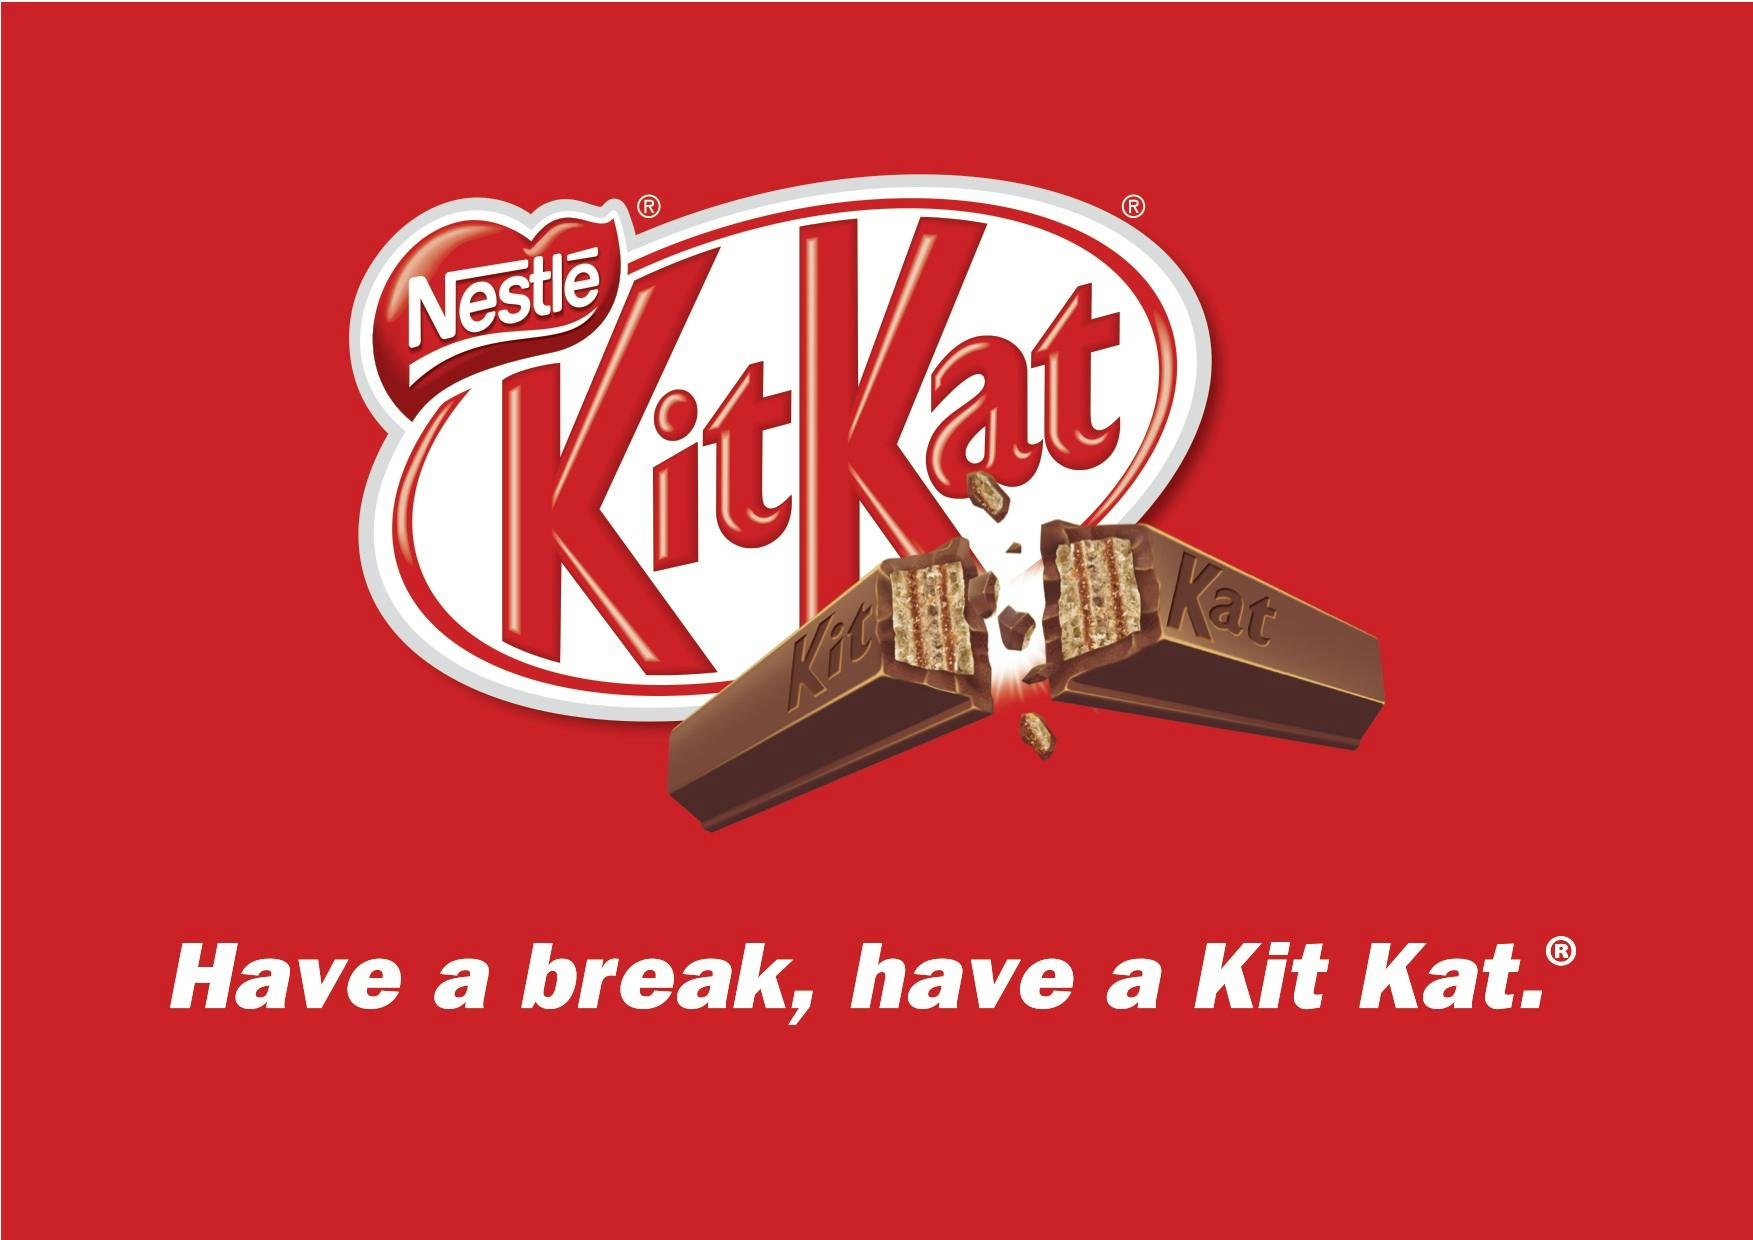 Kitkat fun size